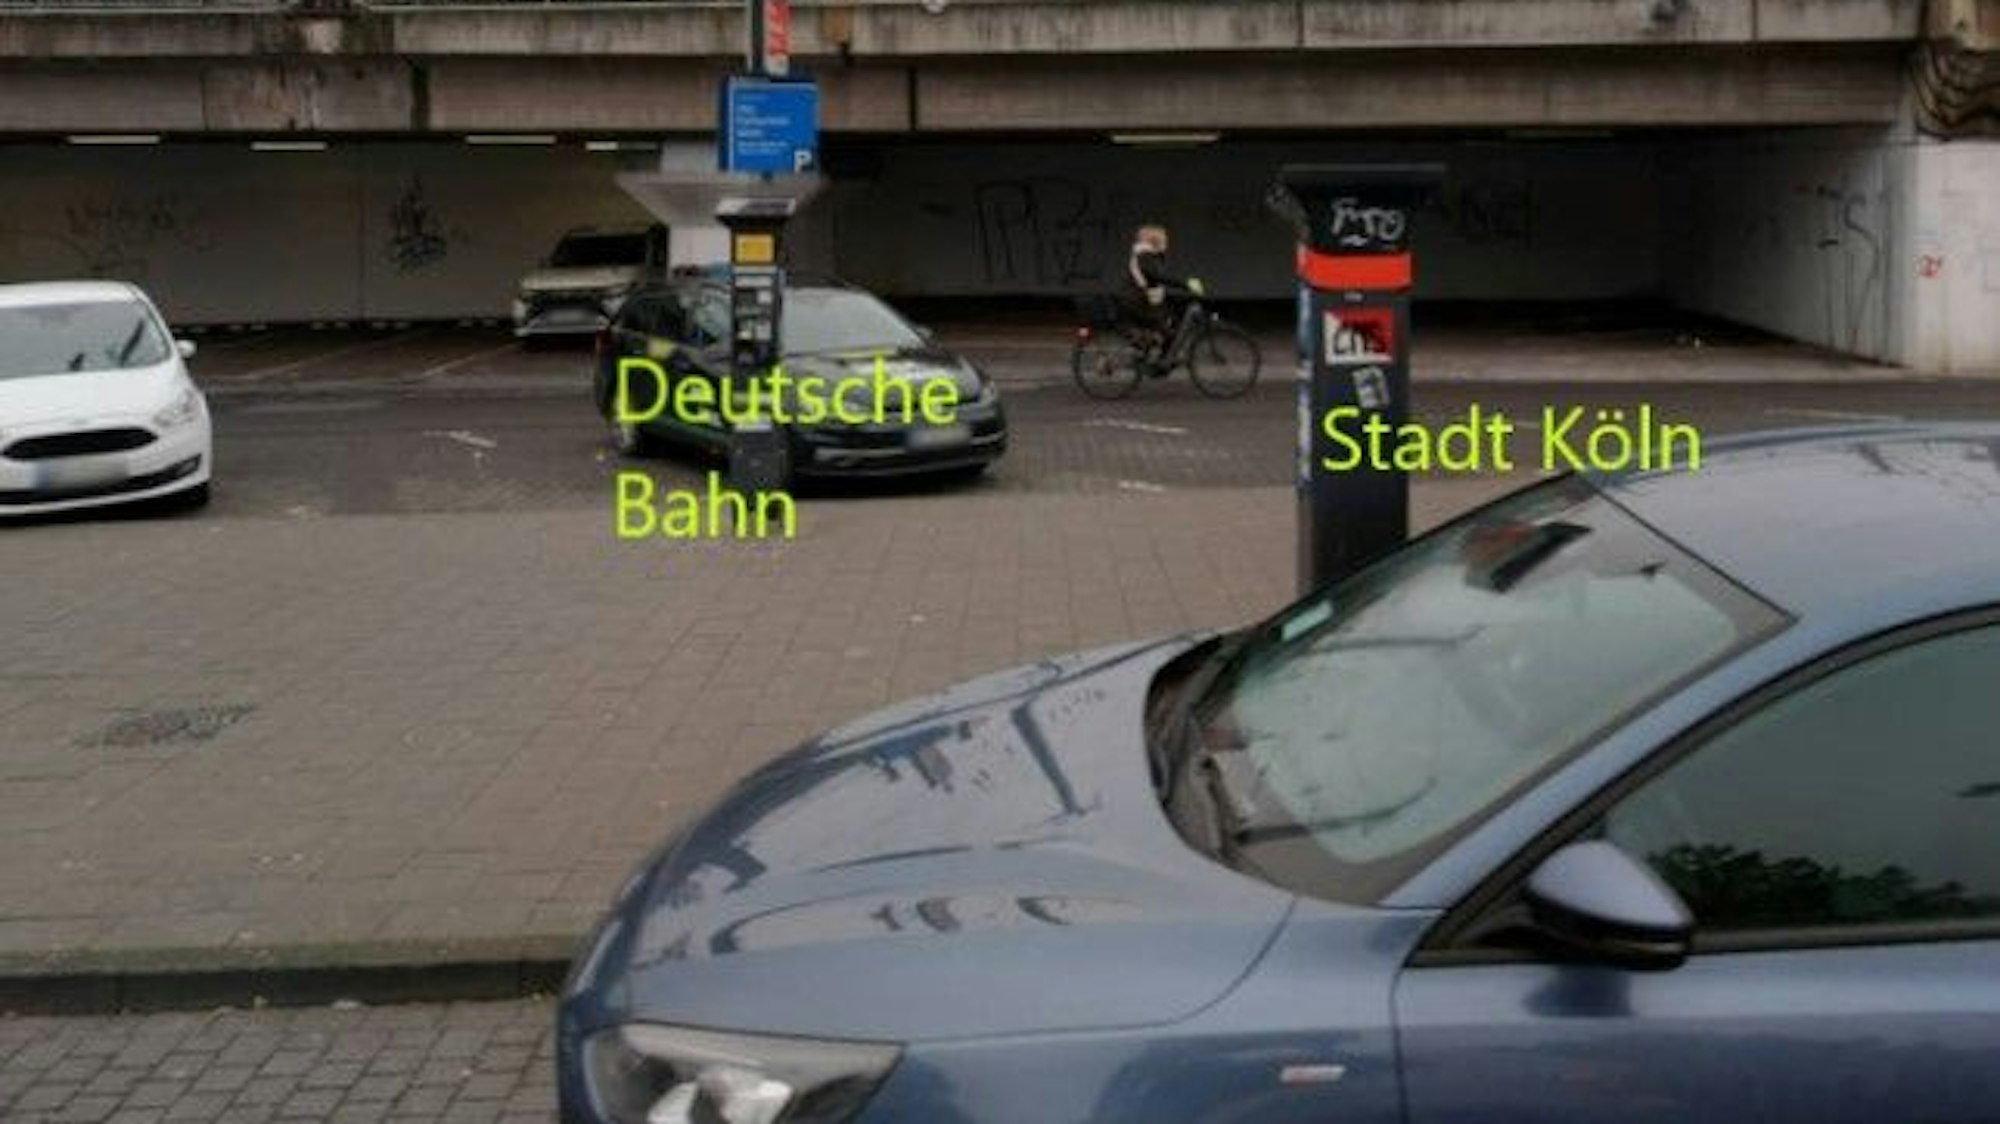 Zwei Parkautomaten am Kölner Hauptbahnhof. Der eine gehört der Deutschen Bahn, der andere der Stadt Köln.